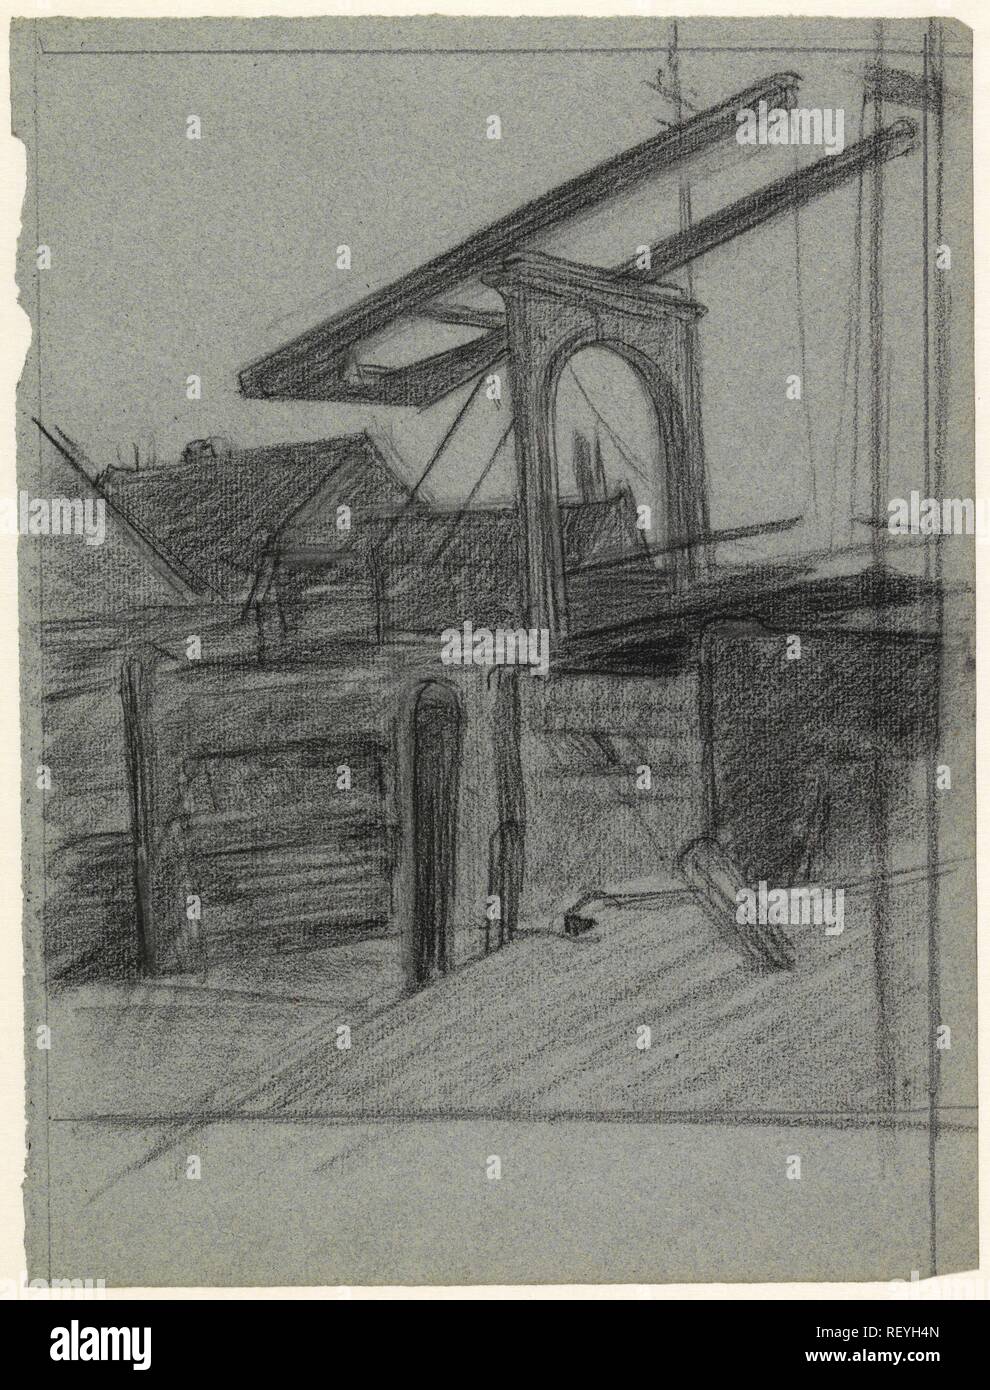 Pont-levis. Rapporteur pour avis : Jan Veth. Dating : 1886. Dimensions : H 307 mm × W 231 mm. Musée : Rijksmuseum, Amsterdam. Banque D'Images